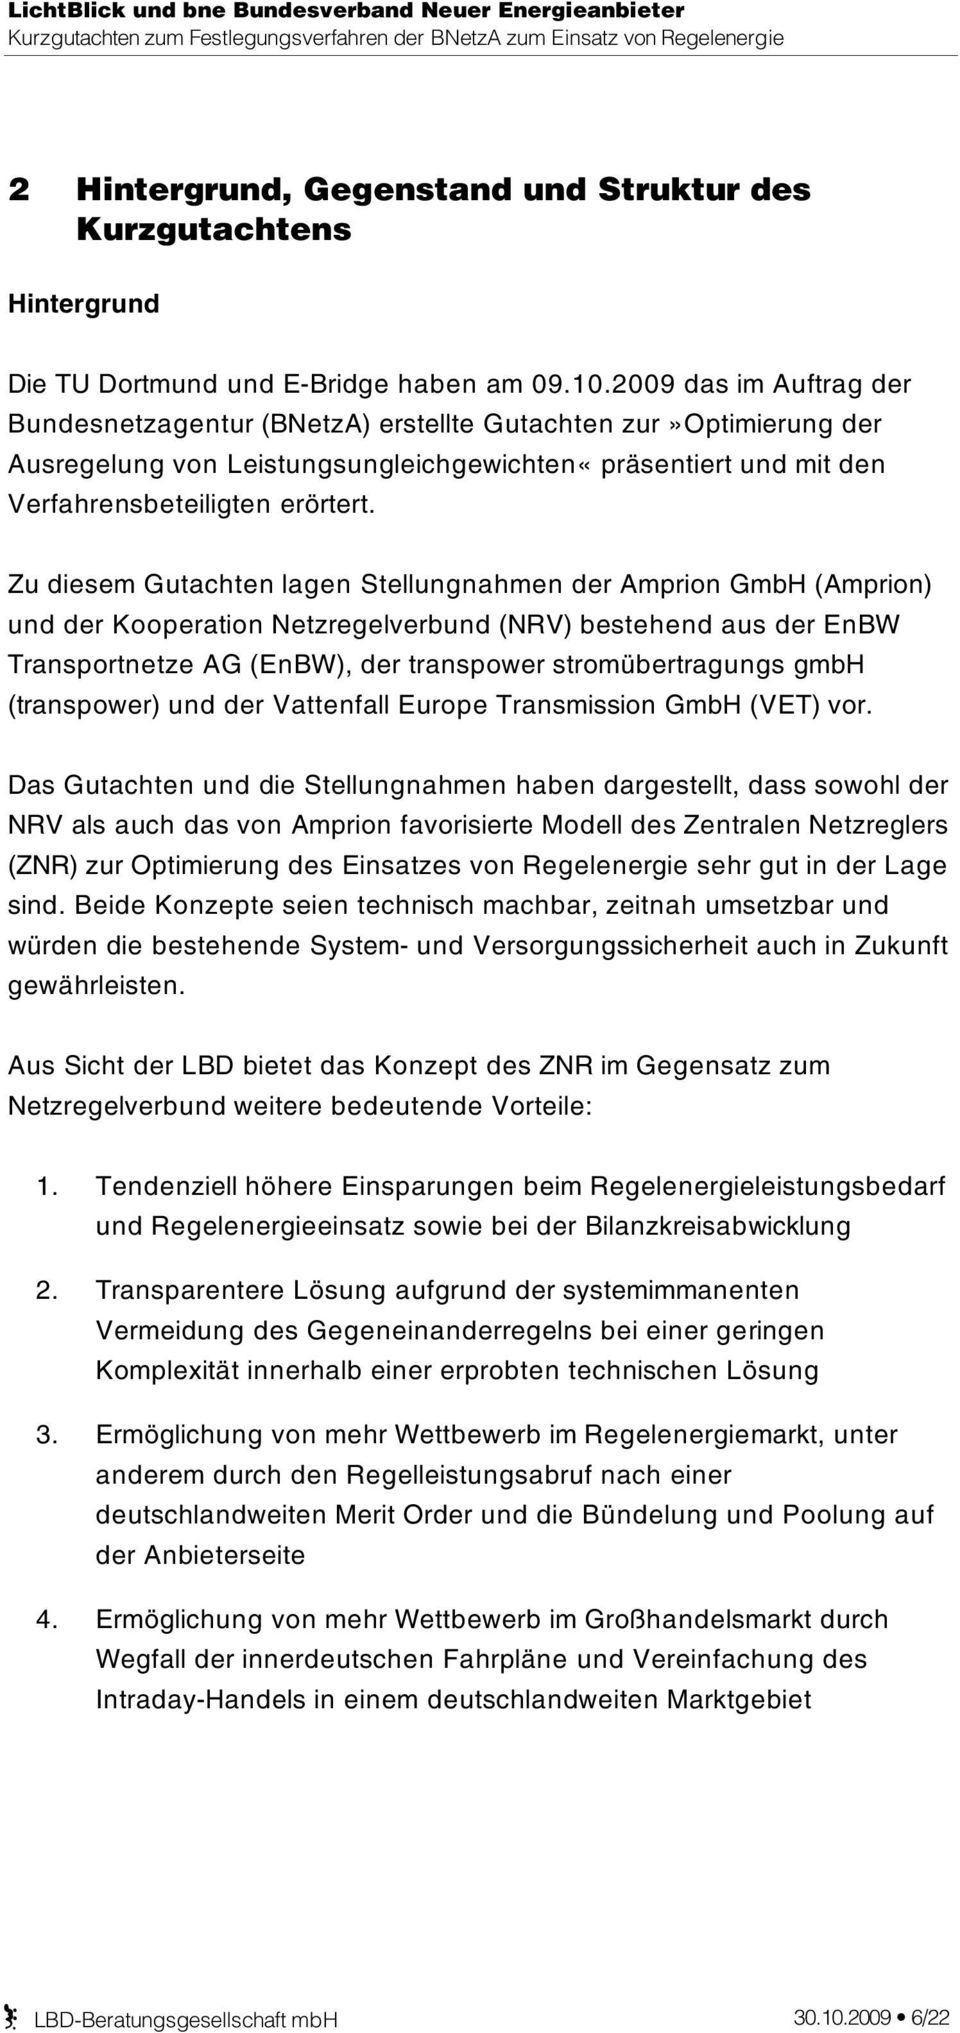 Zu diesem Gutachten lagen Stellungnahmen der Amprion GmbH (Amprion) und der Kooperation Netzregelverbund (NRV) bestehend aus der EnBW Transportnetze AG (EnBW), der transpower stromübertragungs gmbh